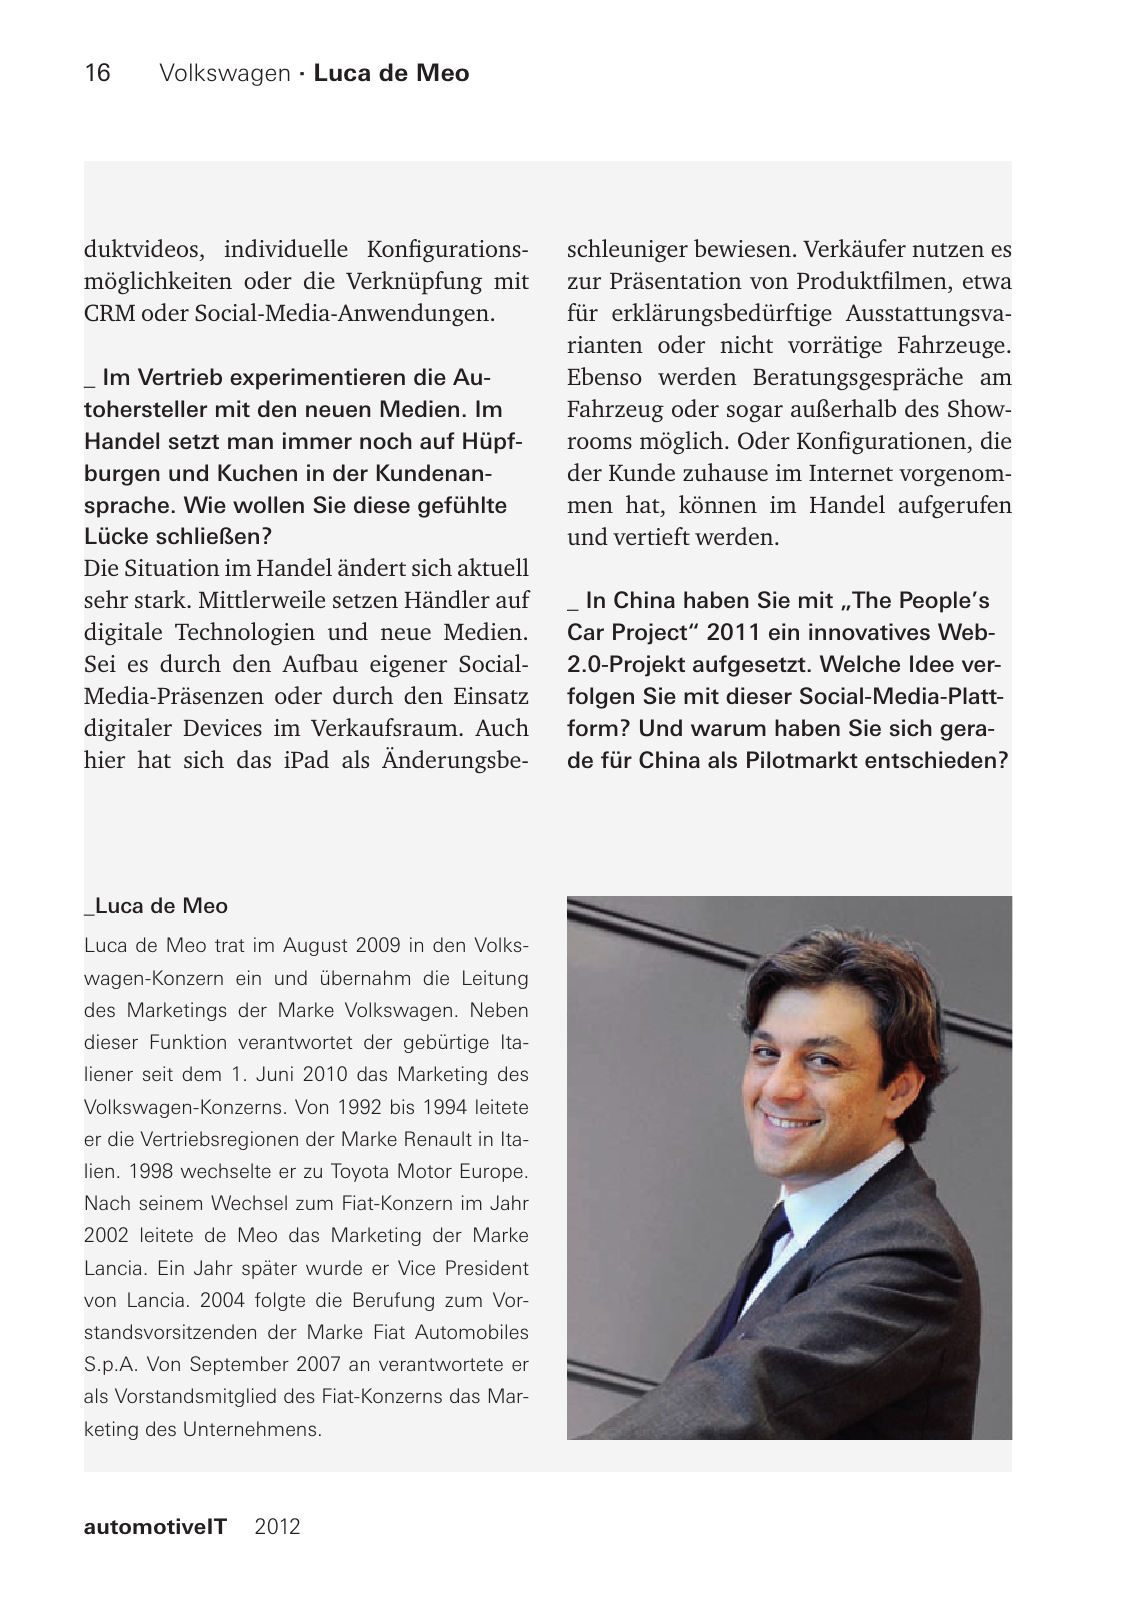 Vorschau Interviewbuch 2012 deutsch Seite 15